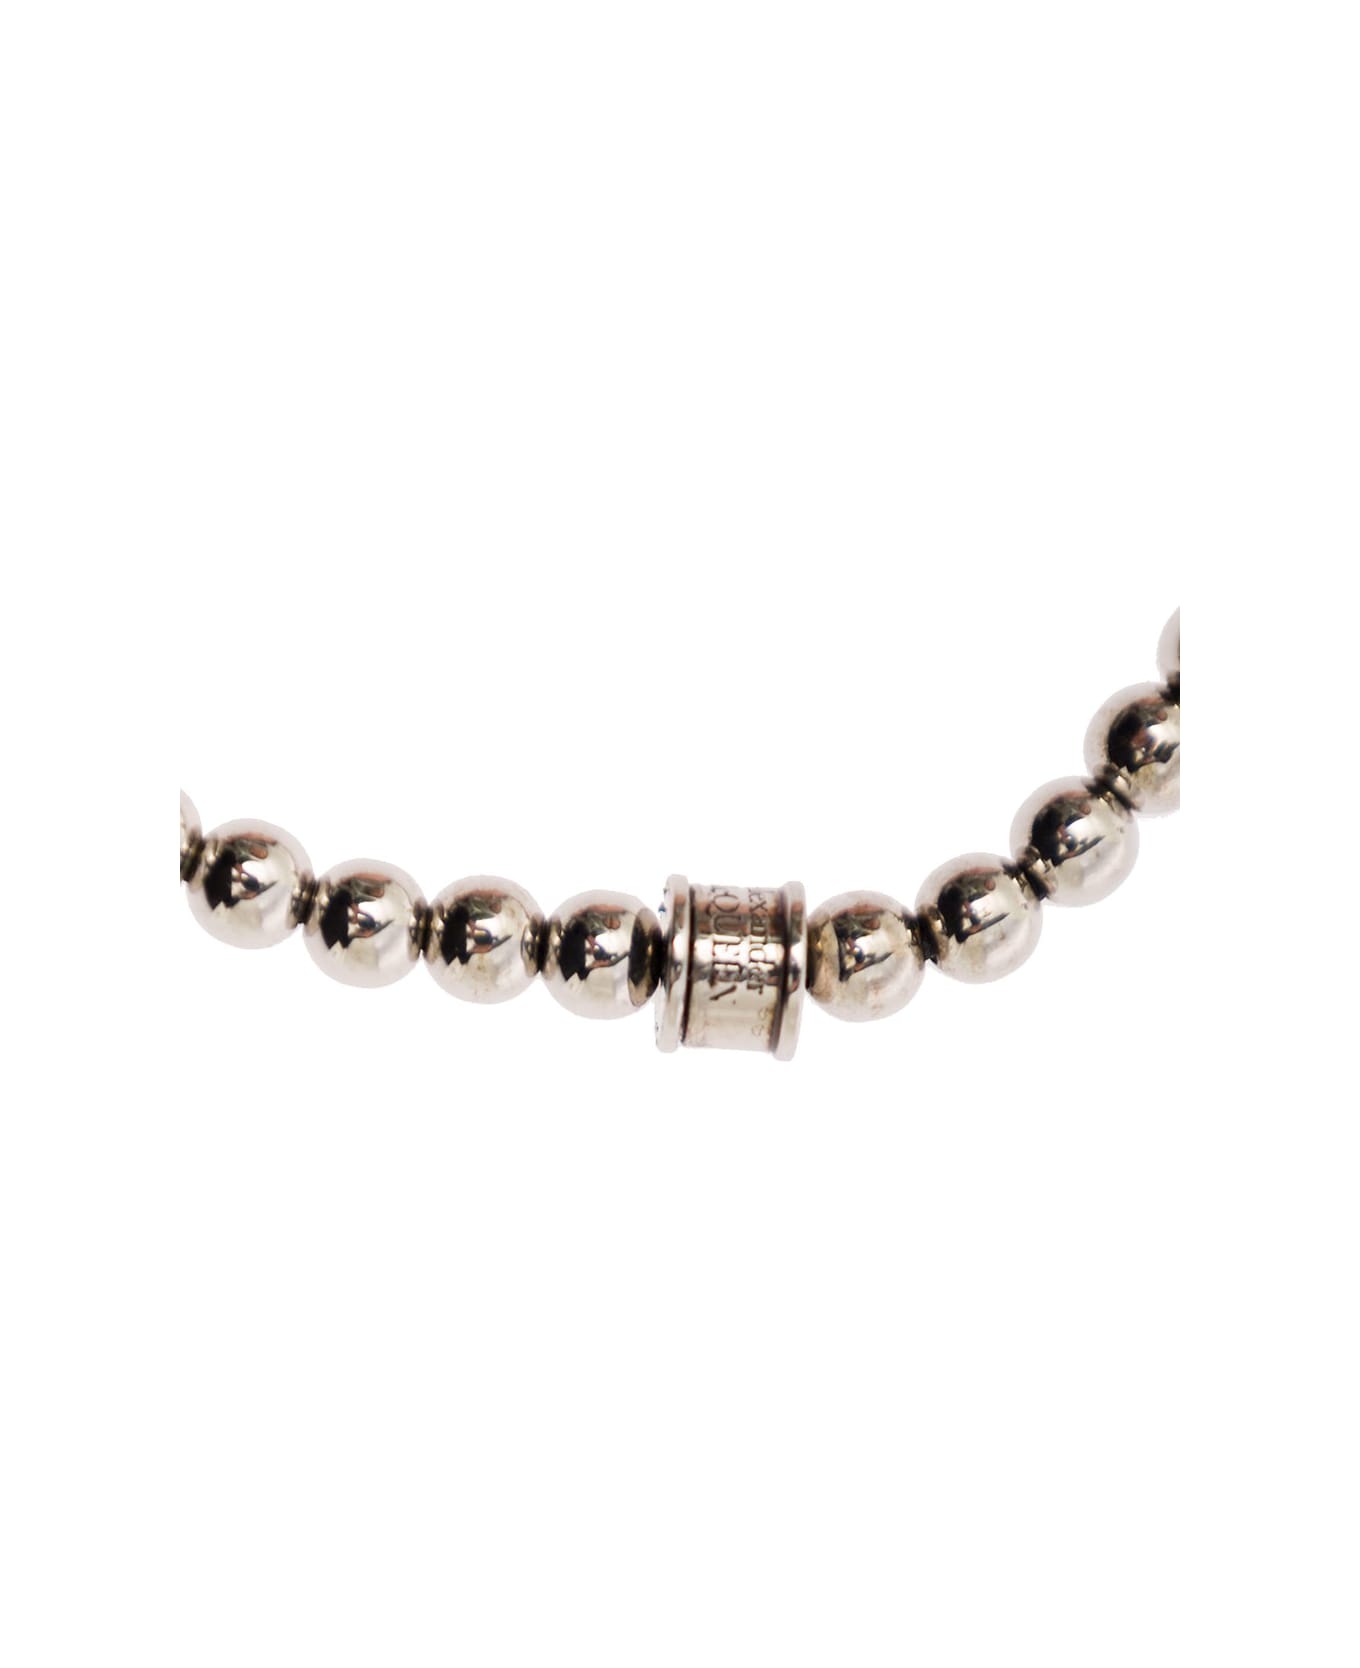 Alexander McQueen Metal Bead Bracelet - Metallic